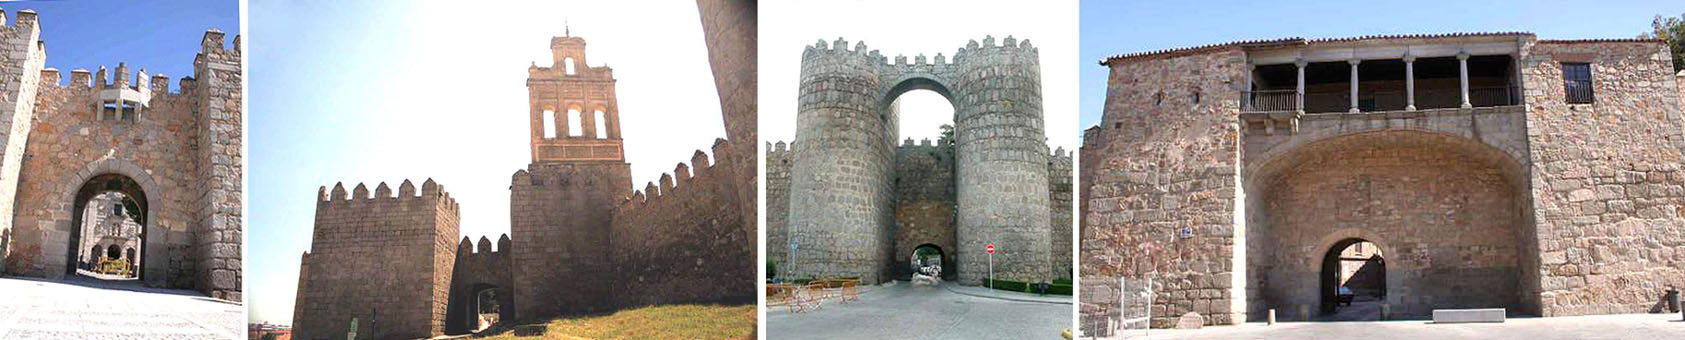 Puertas de Ávila 1